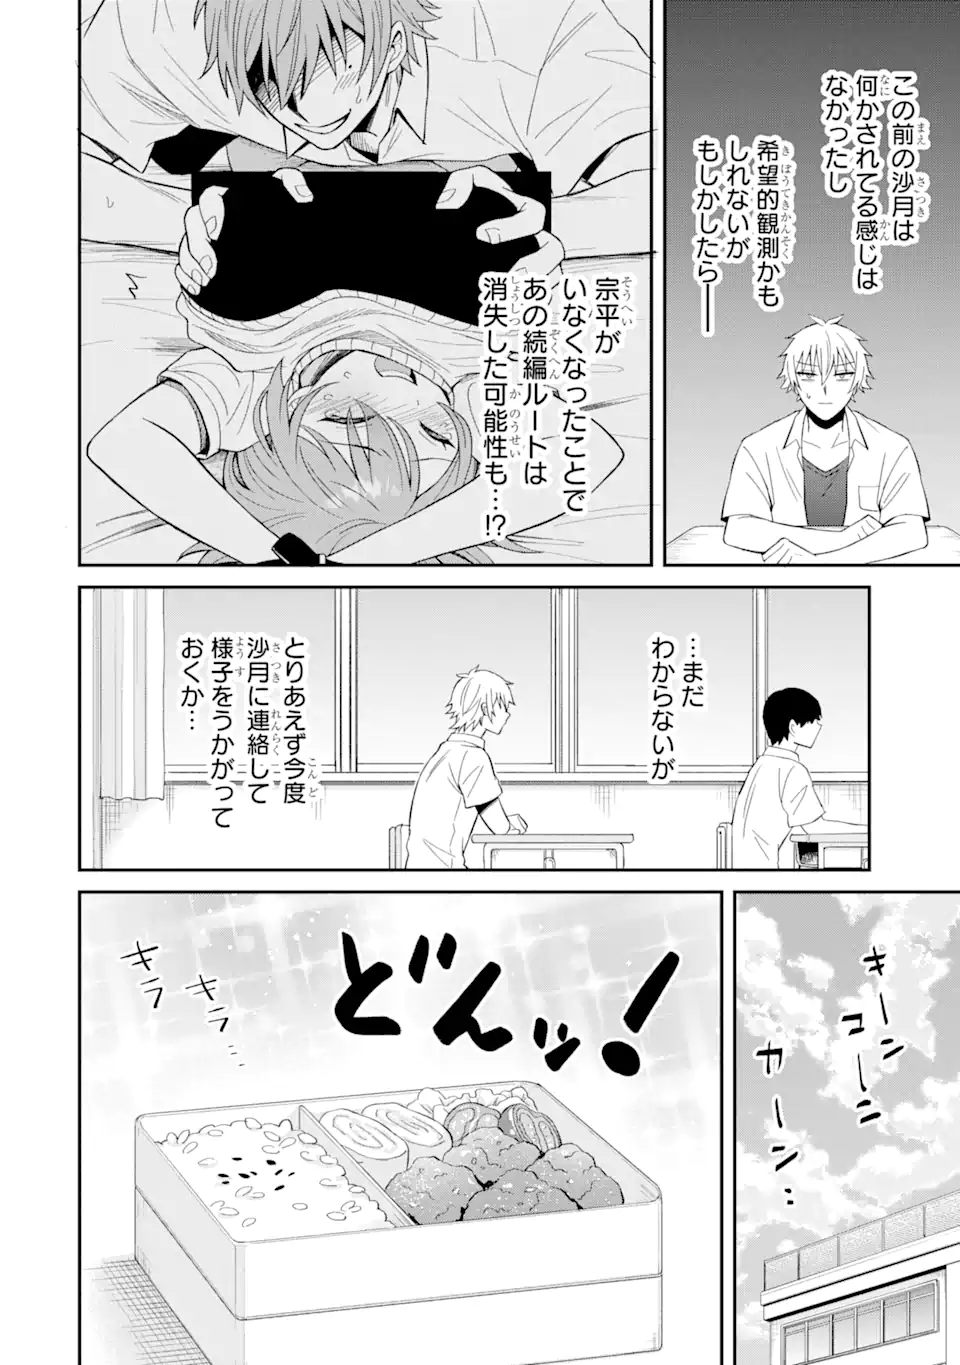 Netorare Manga no Kuzu Otoko ni Tensei Shita Hazu ga Heroine ga Yottekuru Ken - Chapter 11.2 - Page 4